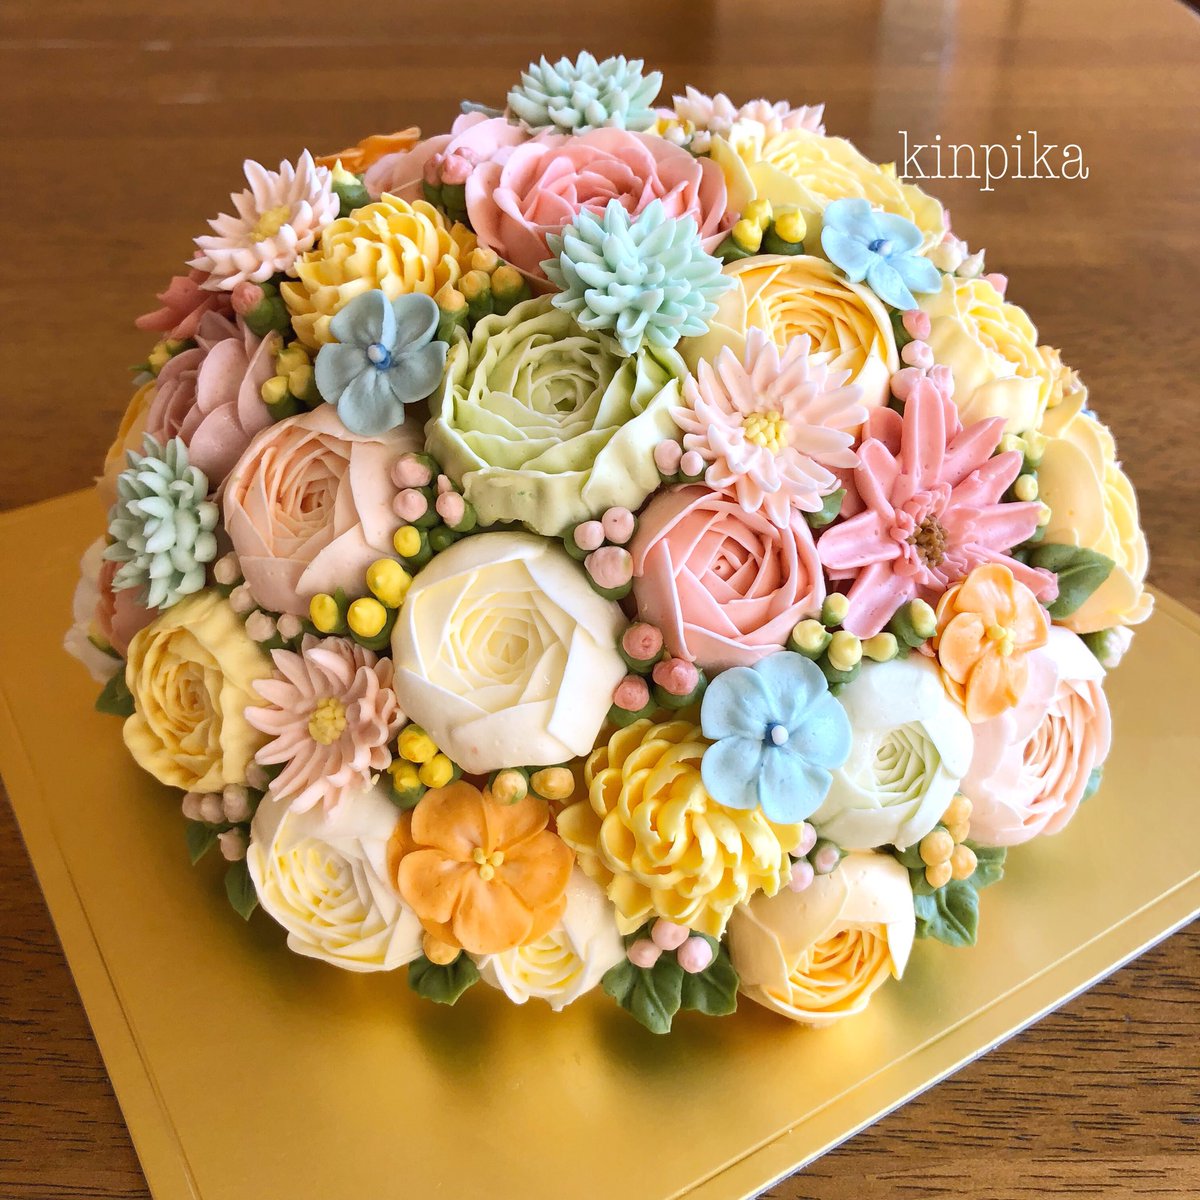 きん Miyajima 娘さんのお誕生日ケーキのために ご旅行でいらしてくださったお客様 とんでもなく豪華なケーキになりました お花が60個程 オーダーをいただき作ったものの豪華で震えます 娘さんのリアクションも見られて こちらまで嬉しく楽しくなり